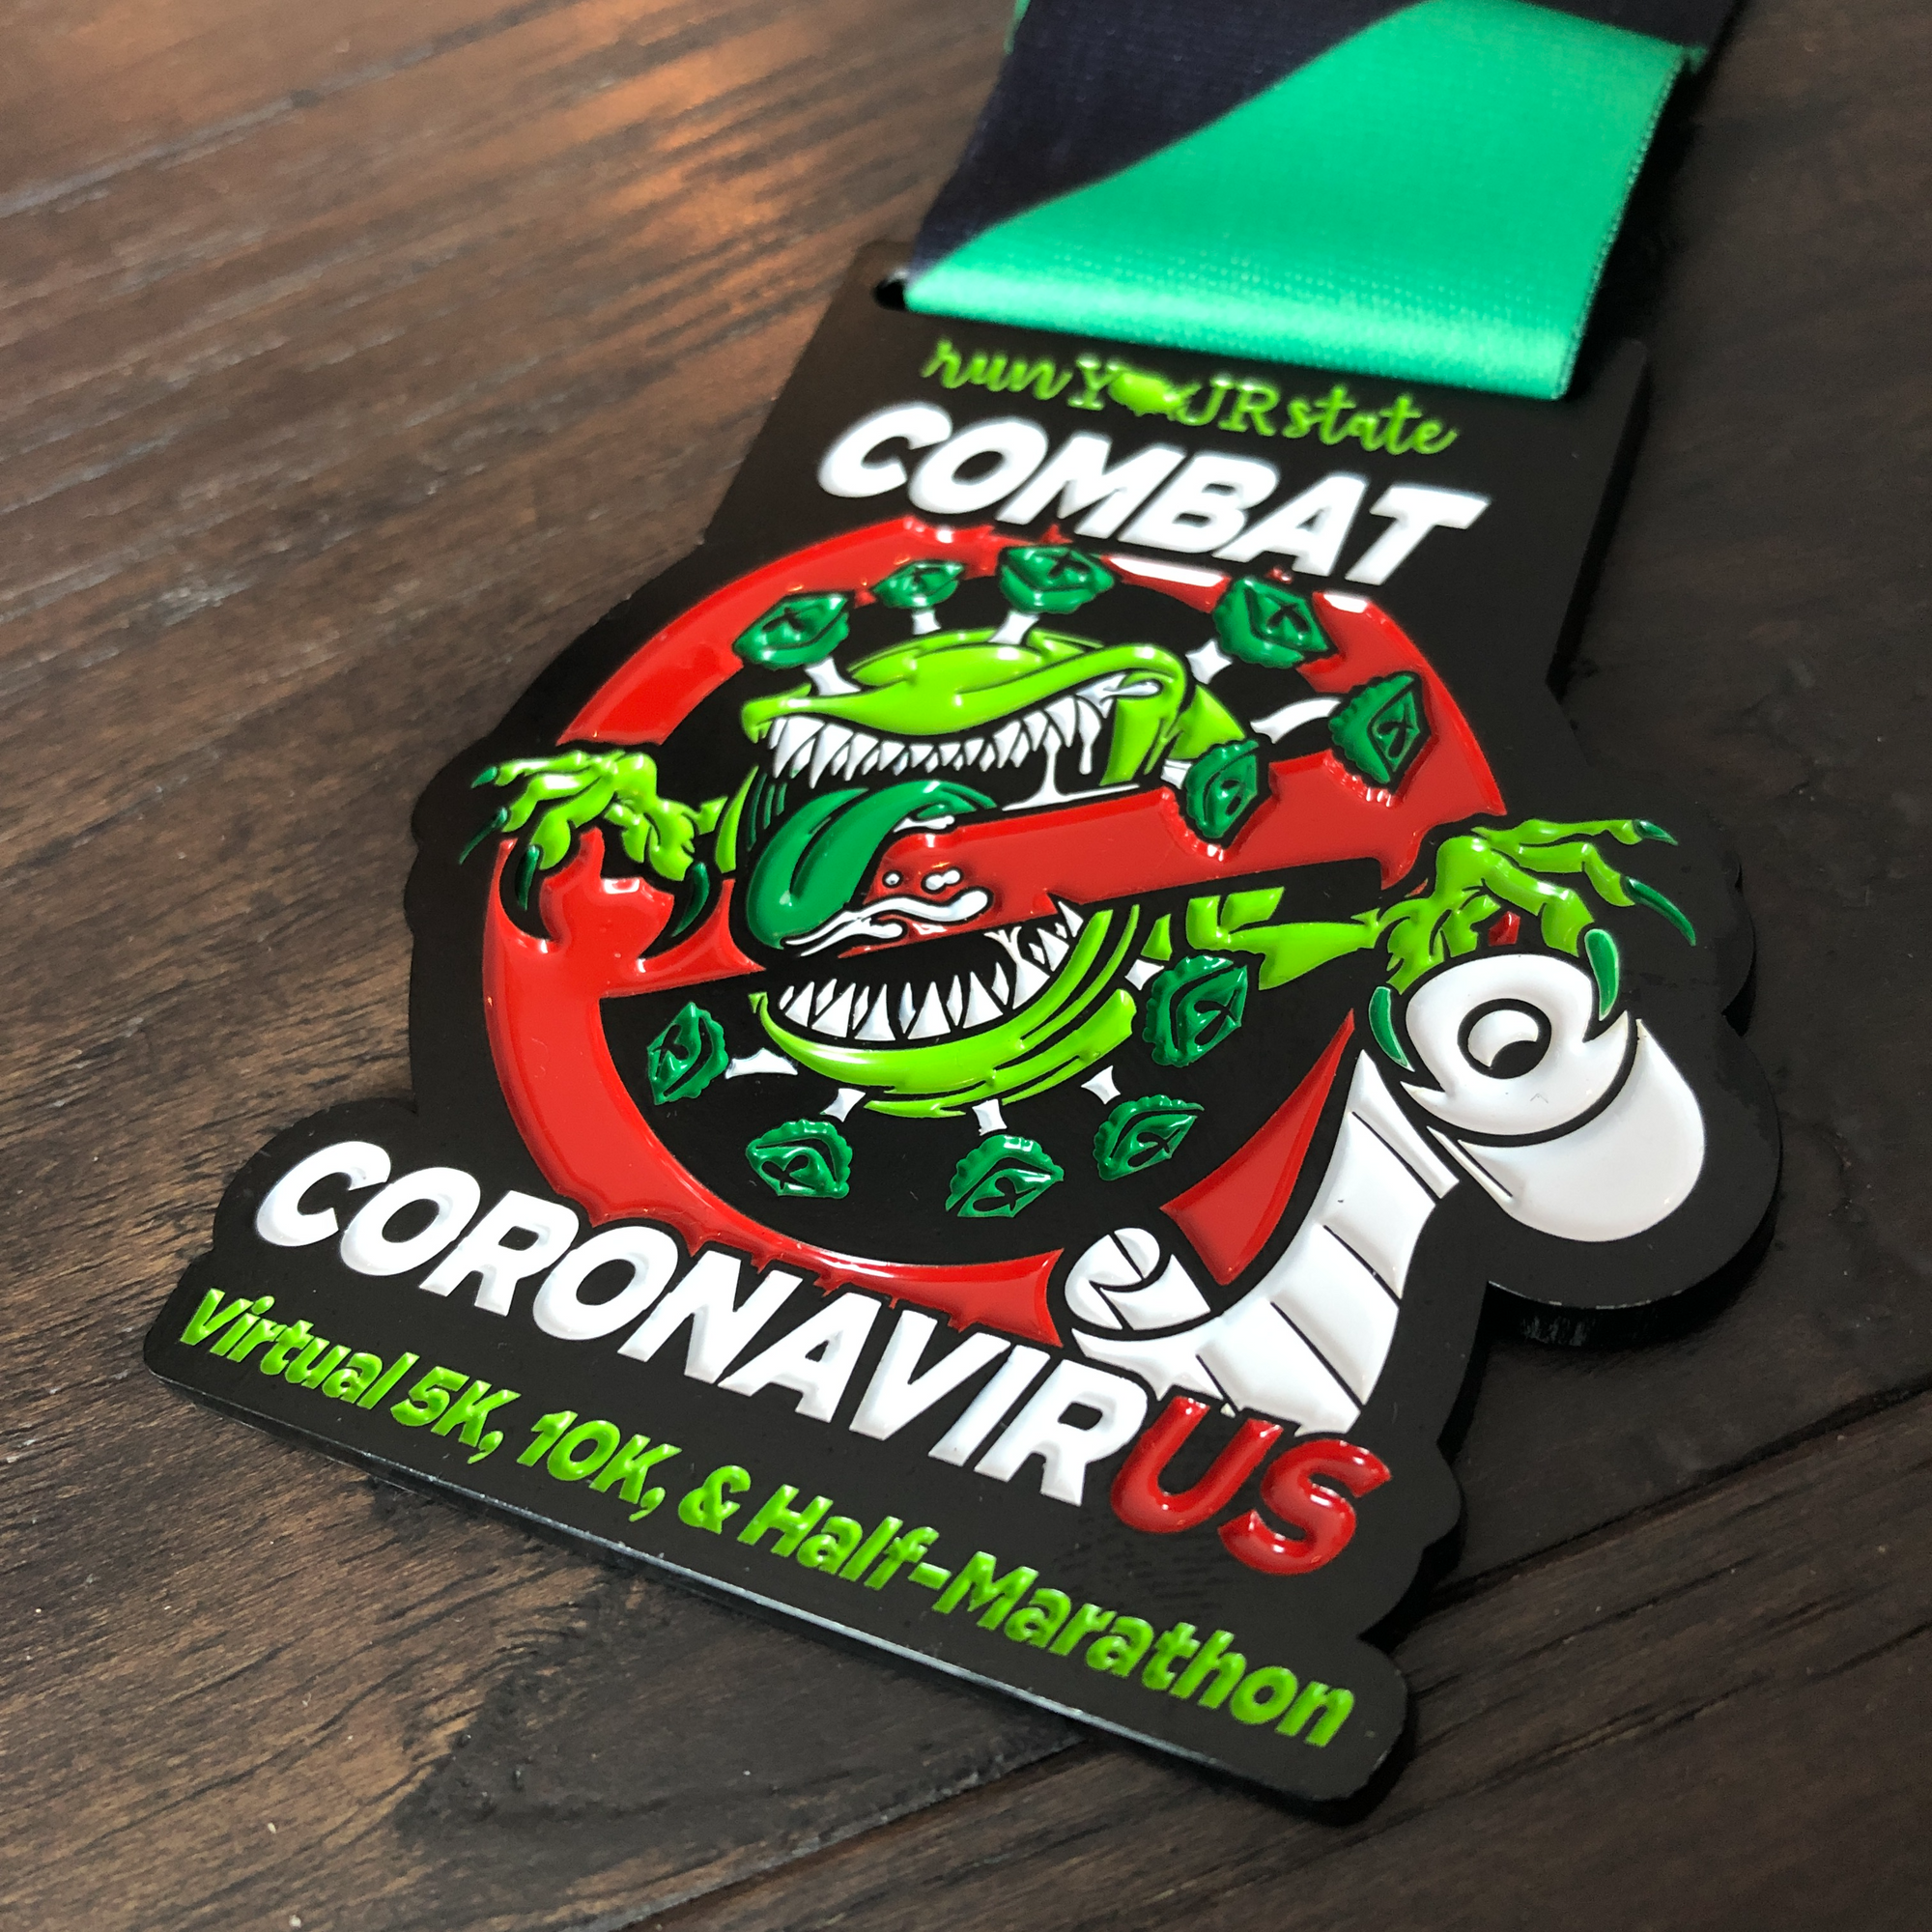 Combat Coronavirus - Virtual Race Medal